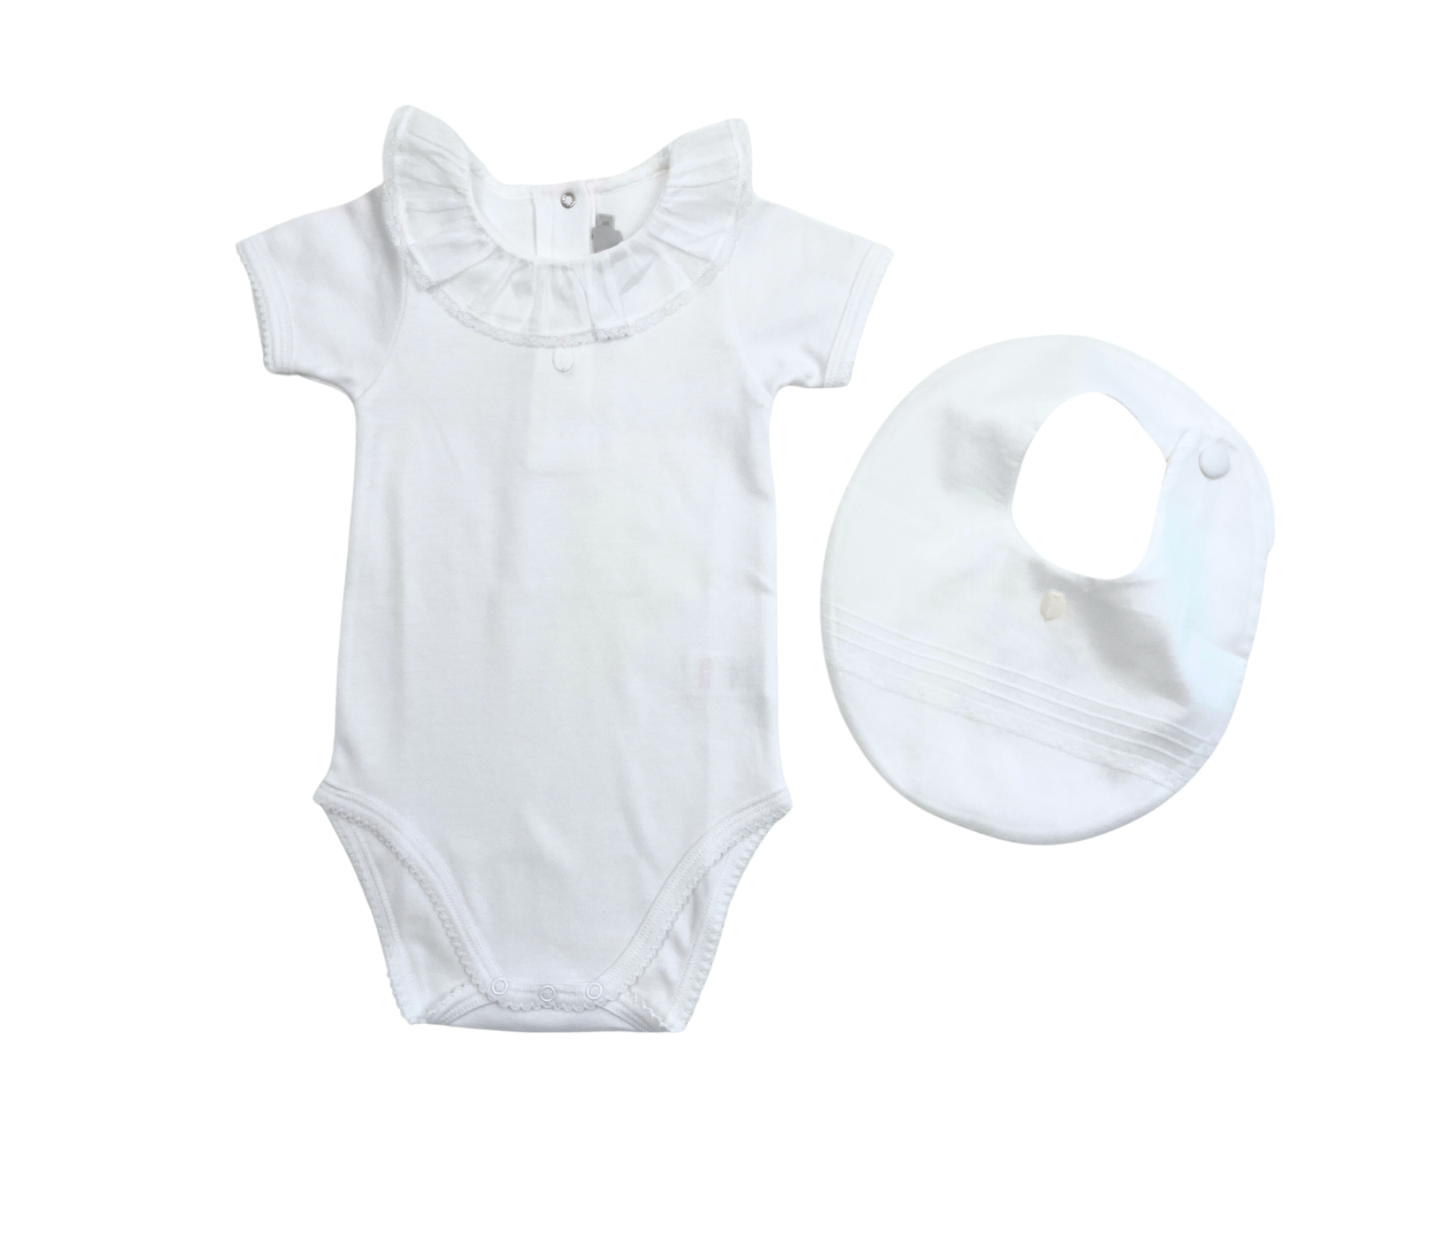 BABY DIOR - Body blanc avec son bavoir - 6 mois